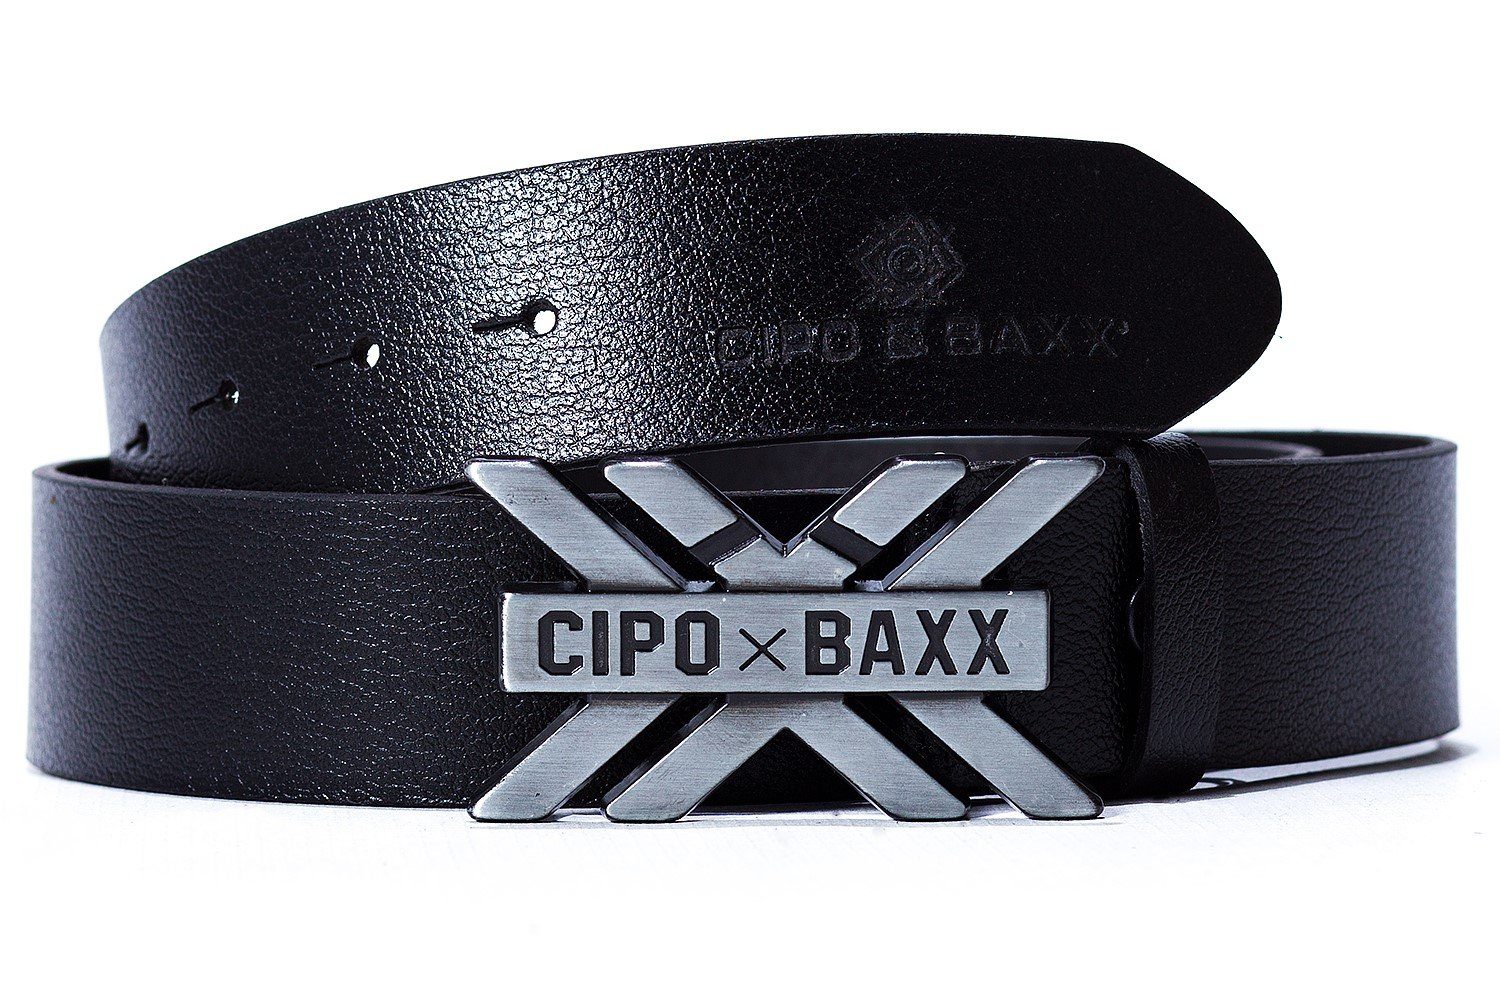 BA-CG147 & Baxx gebürsteten einer aus Gürtel Metall Cipo schwarz Ledergürtel Schnalle Eleganter mit